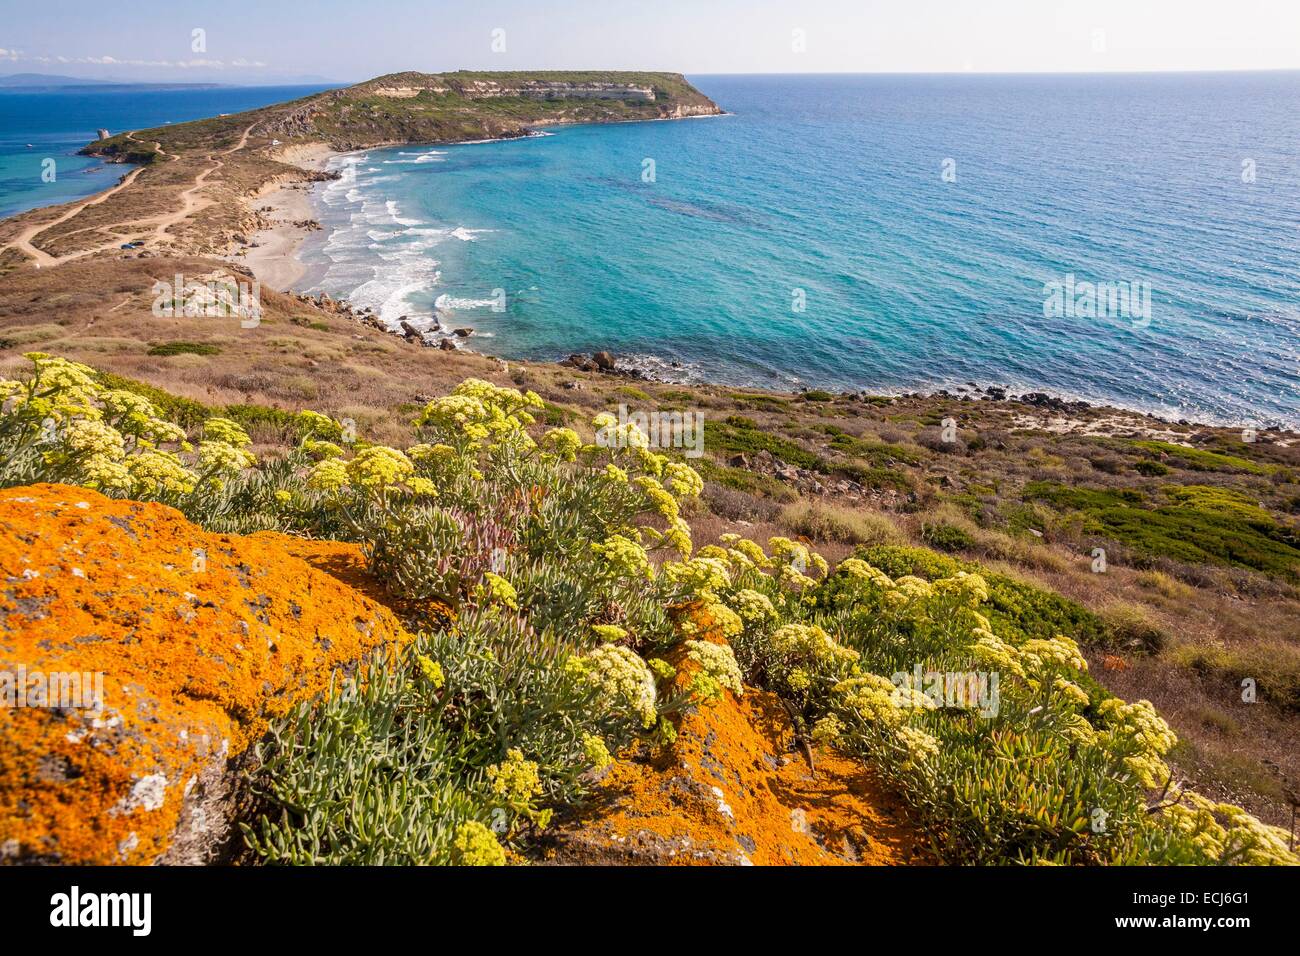 Italie, Sardaigne, Oristano province, la péninsule de Sinis, Capo San Marco avec sa plage Banque D'Images